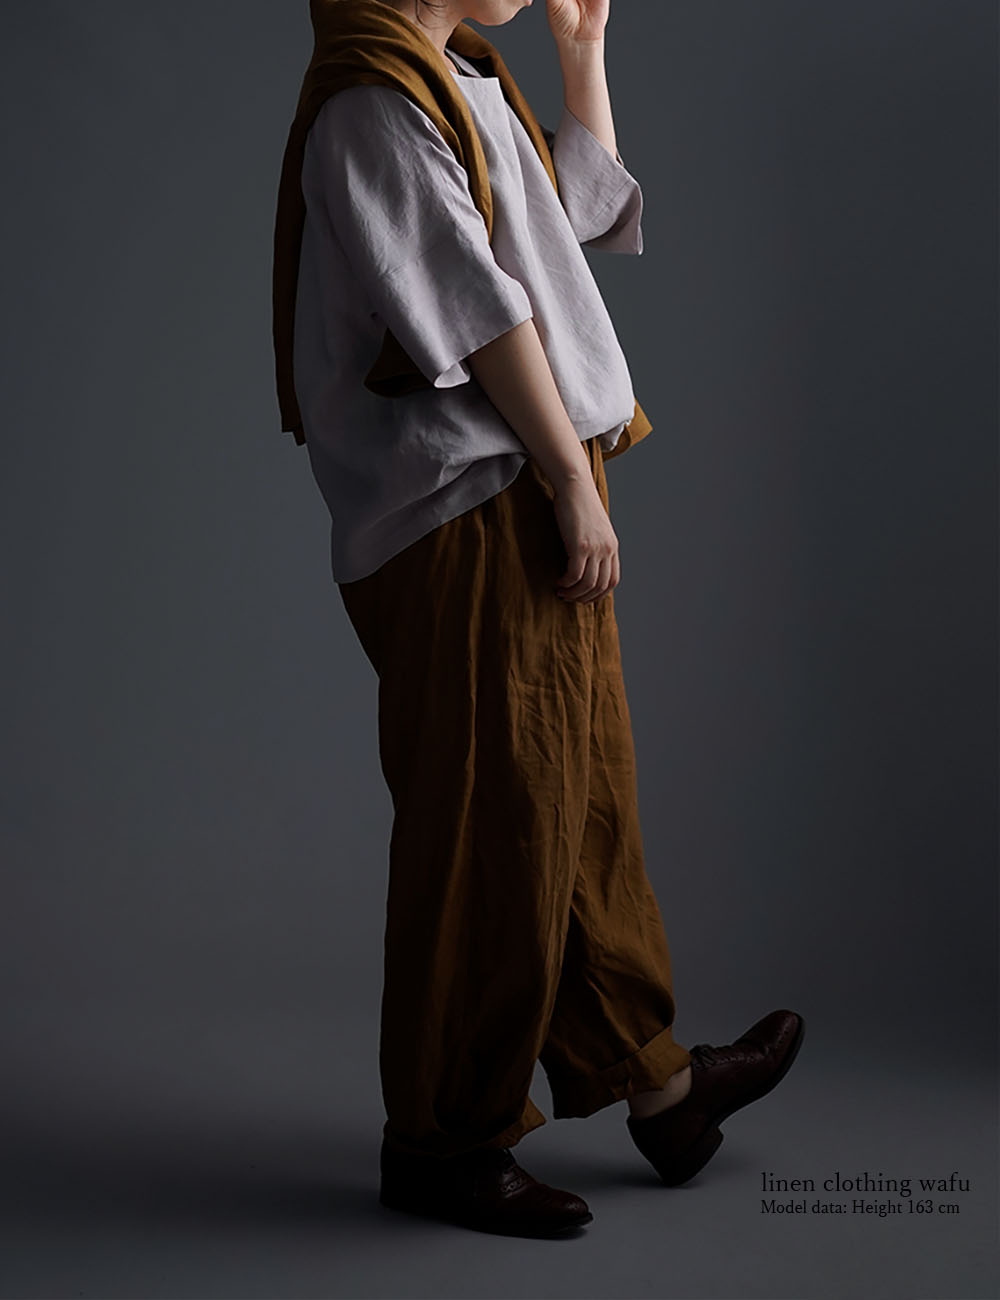 【wafu】Oversized Linen T-shirt リネンビッグT チュニック /灰桜(はいざくら) t041f-hzk1